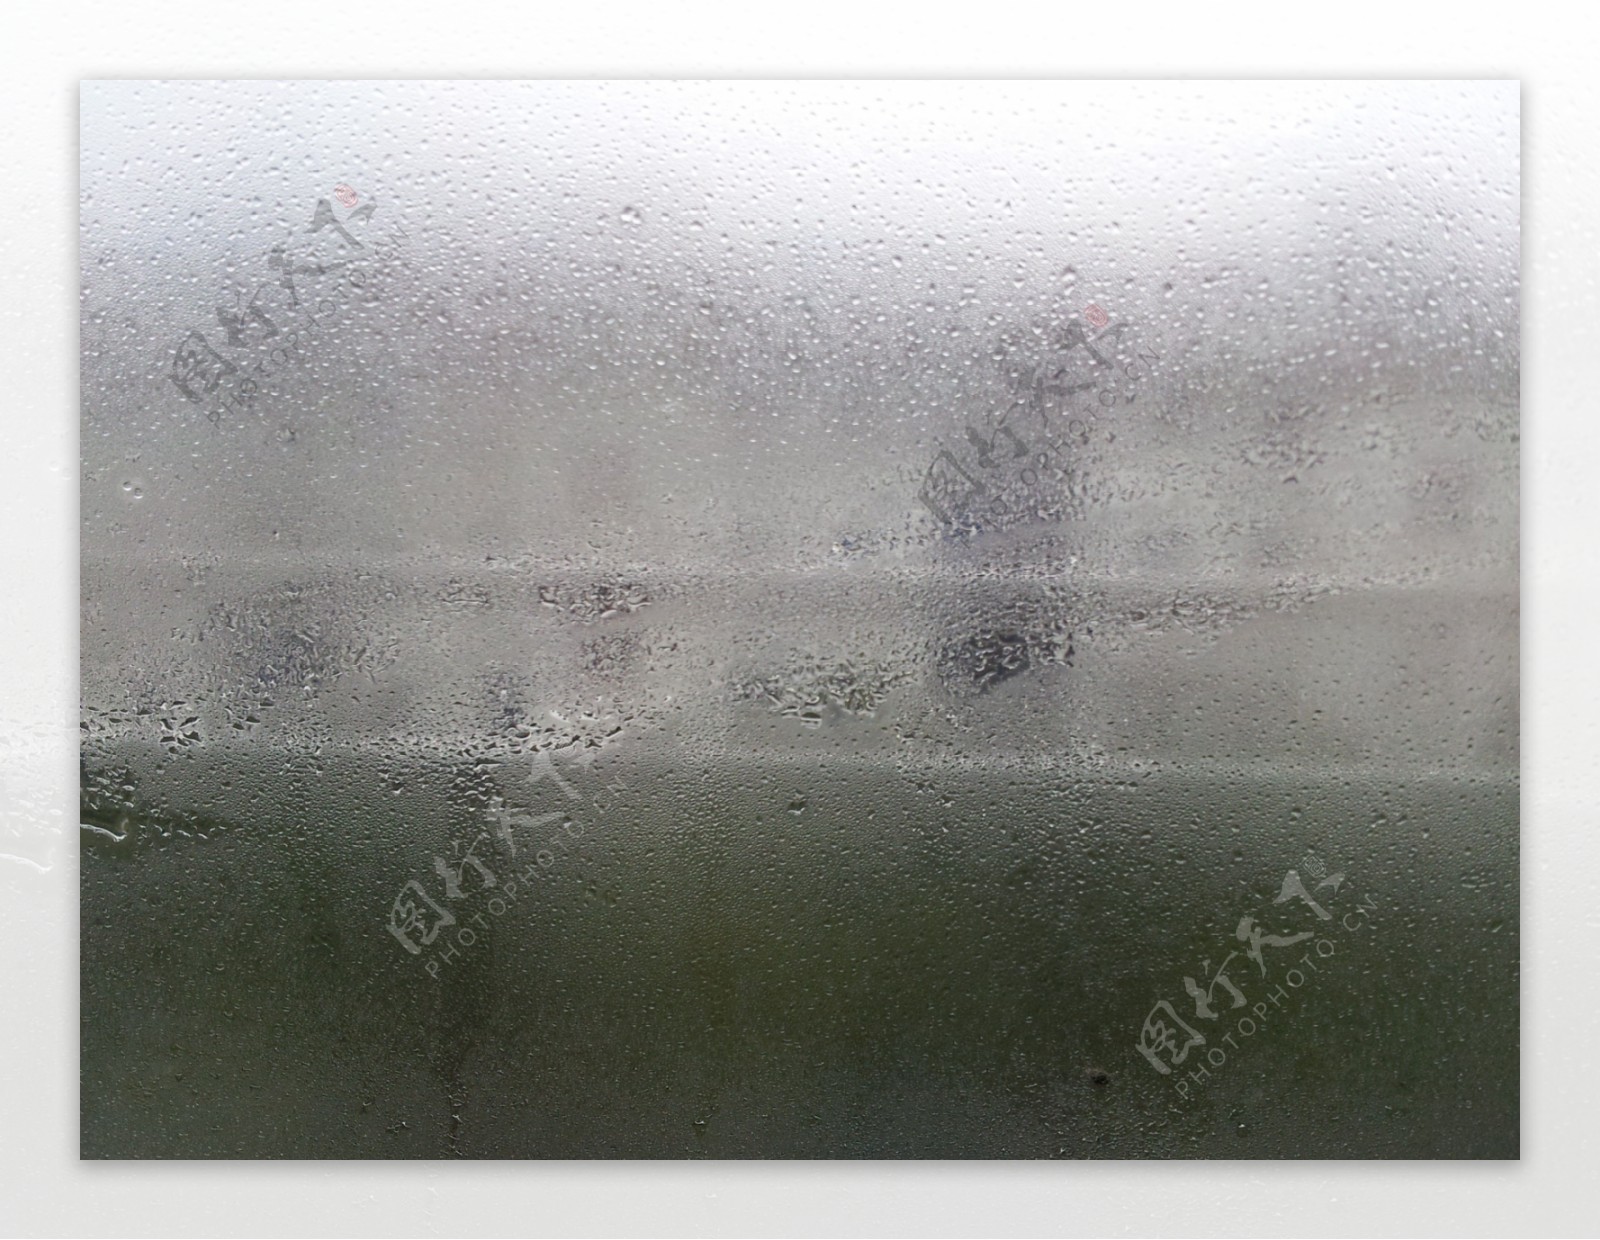 玻璃雨图片